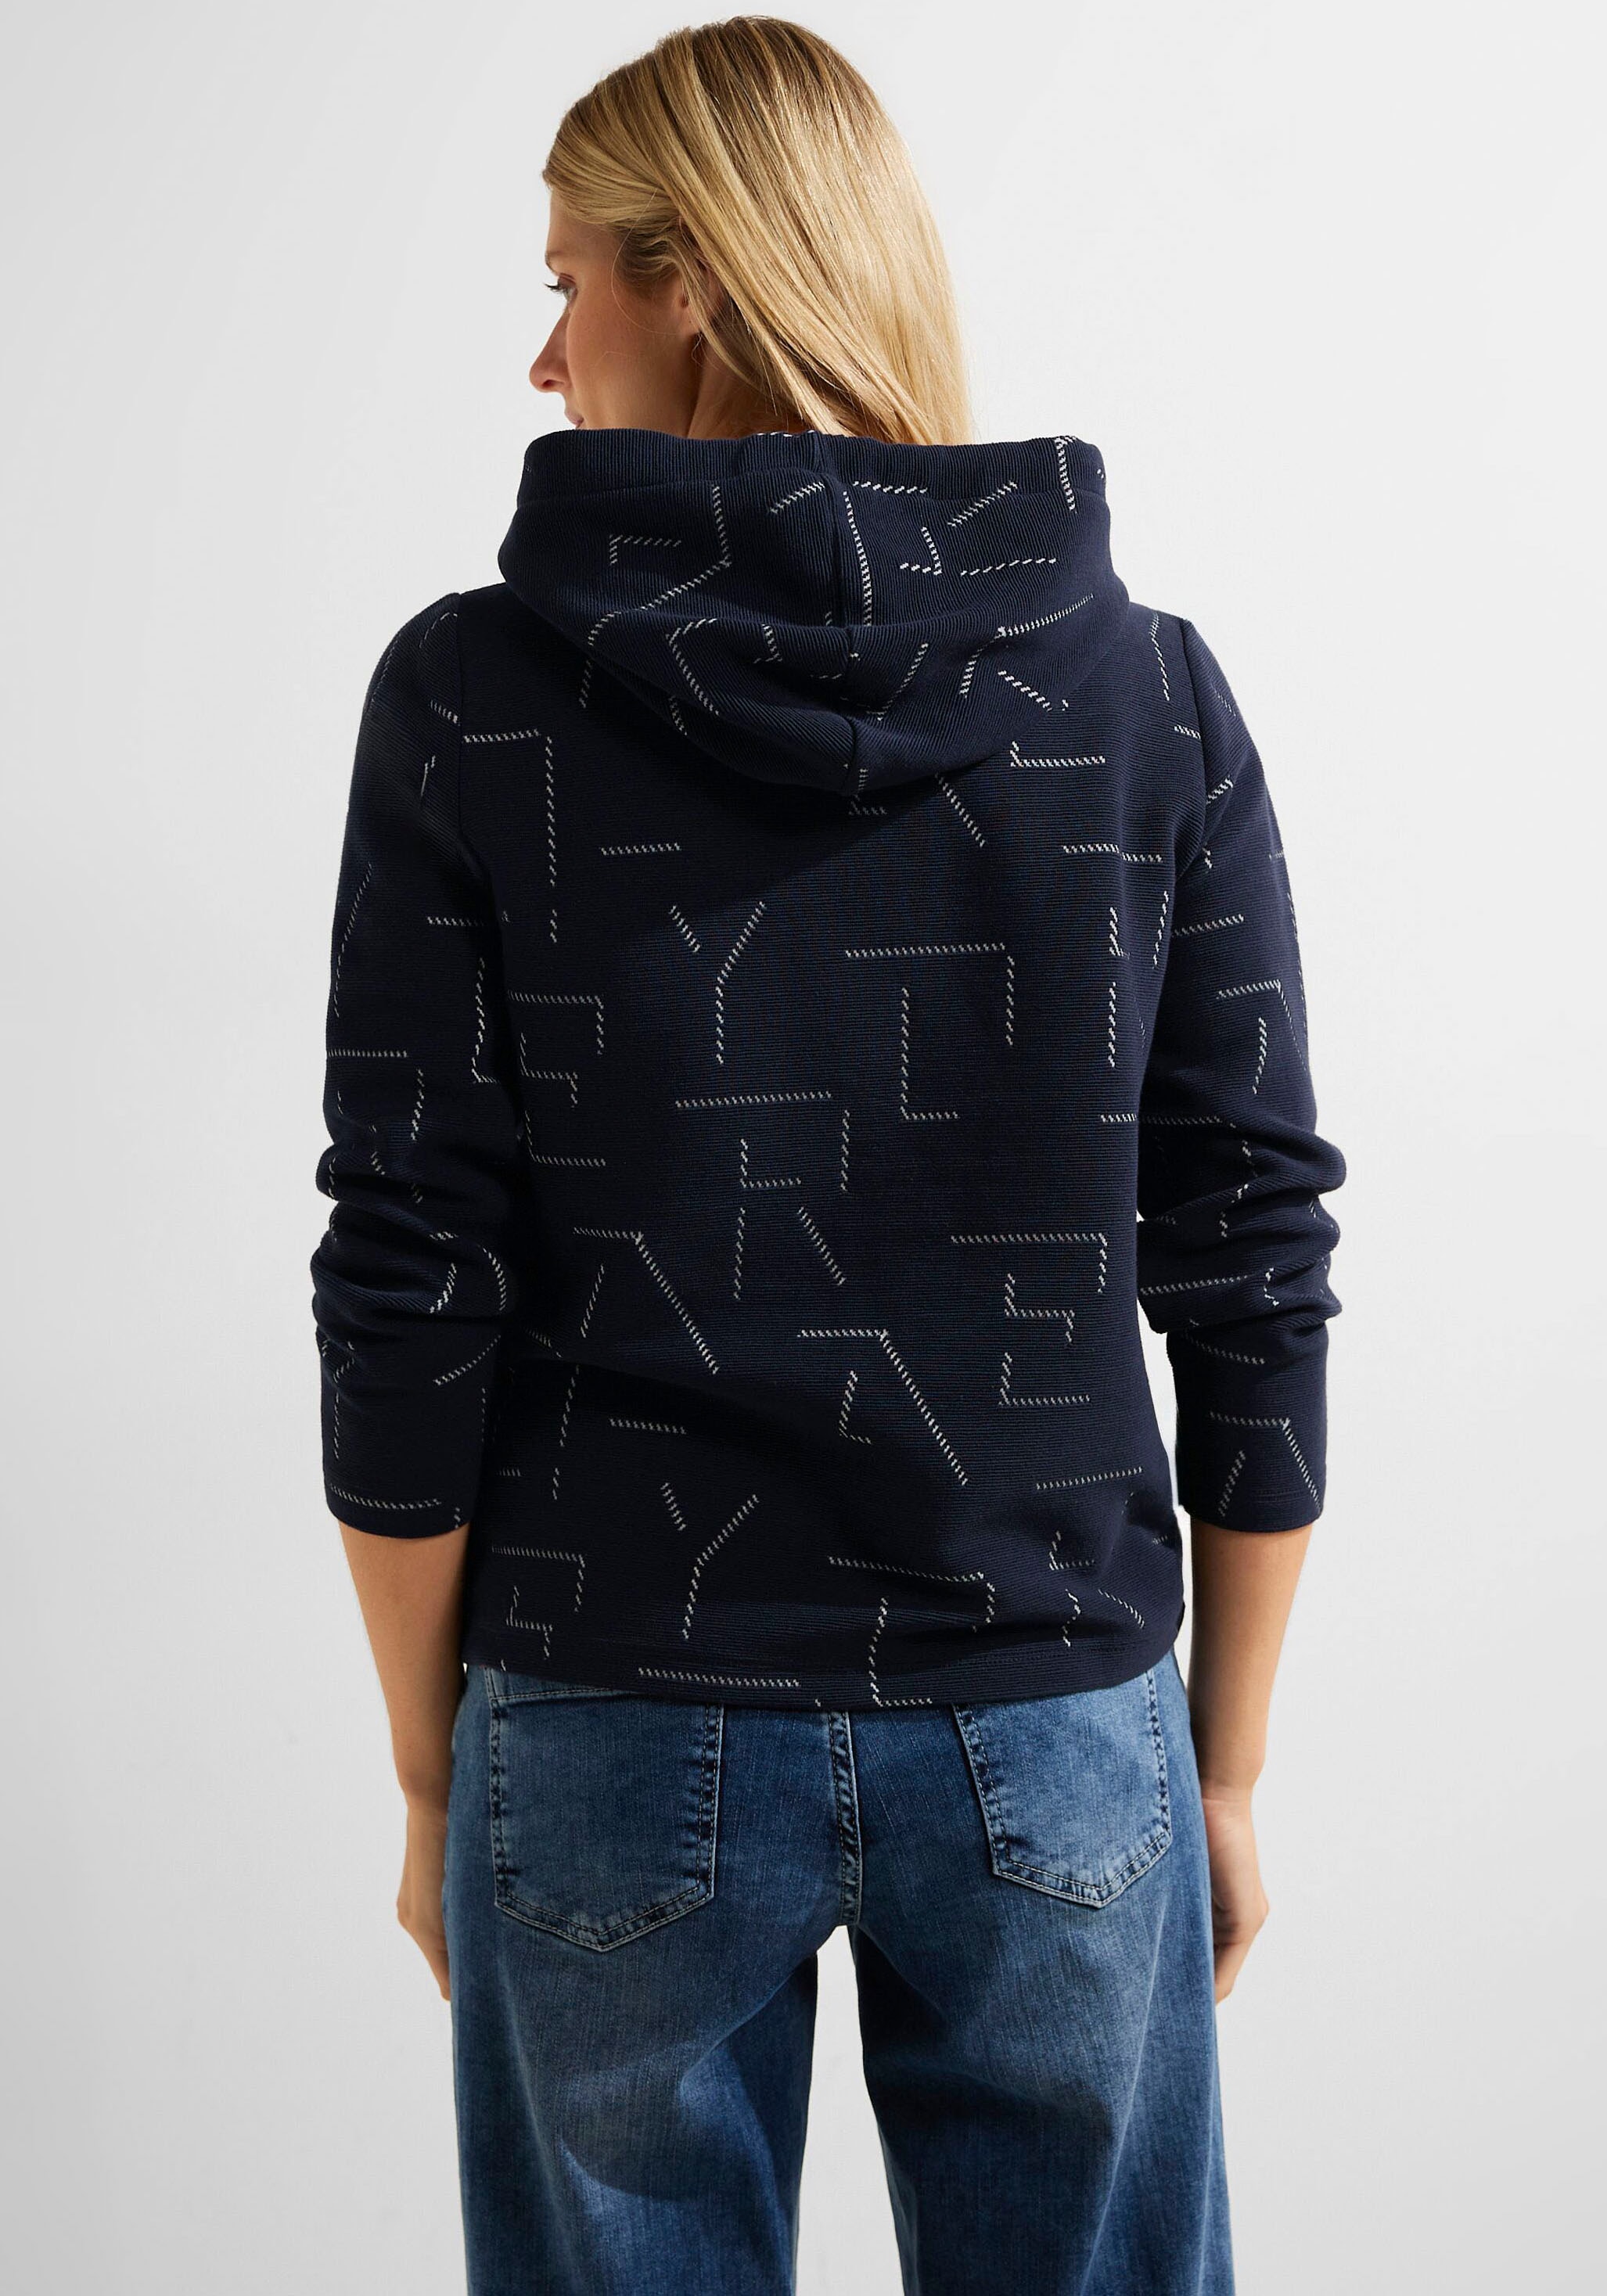 einzigartigem online mit Cecil shoppen Jelmoli-Versand Sweatshirt, bei Schweiz Jacquard-Muster